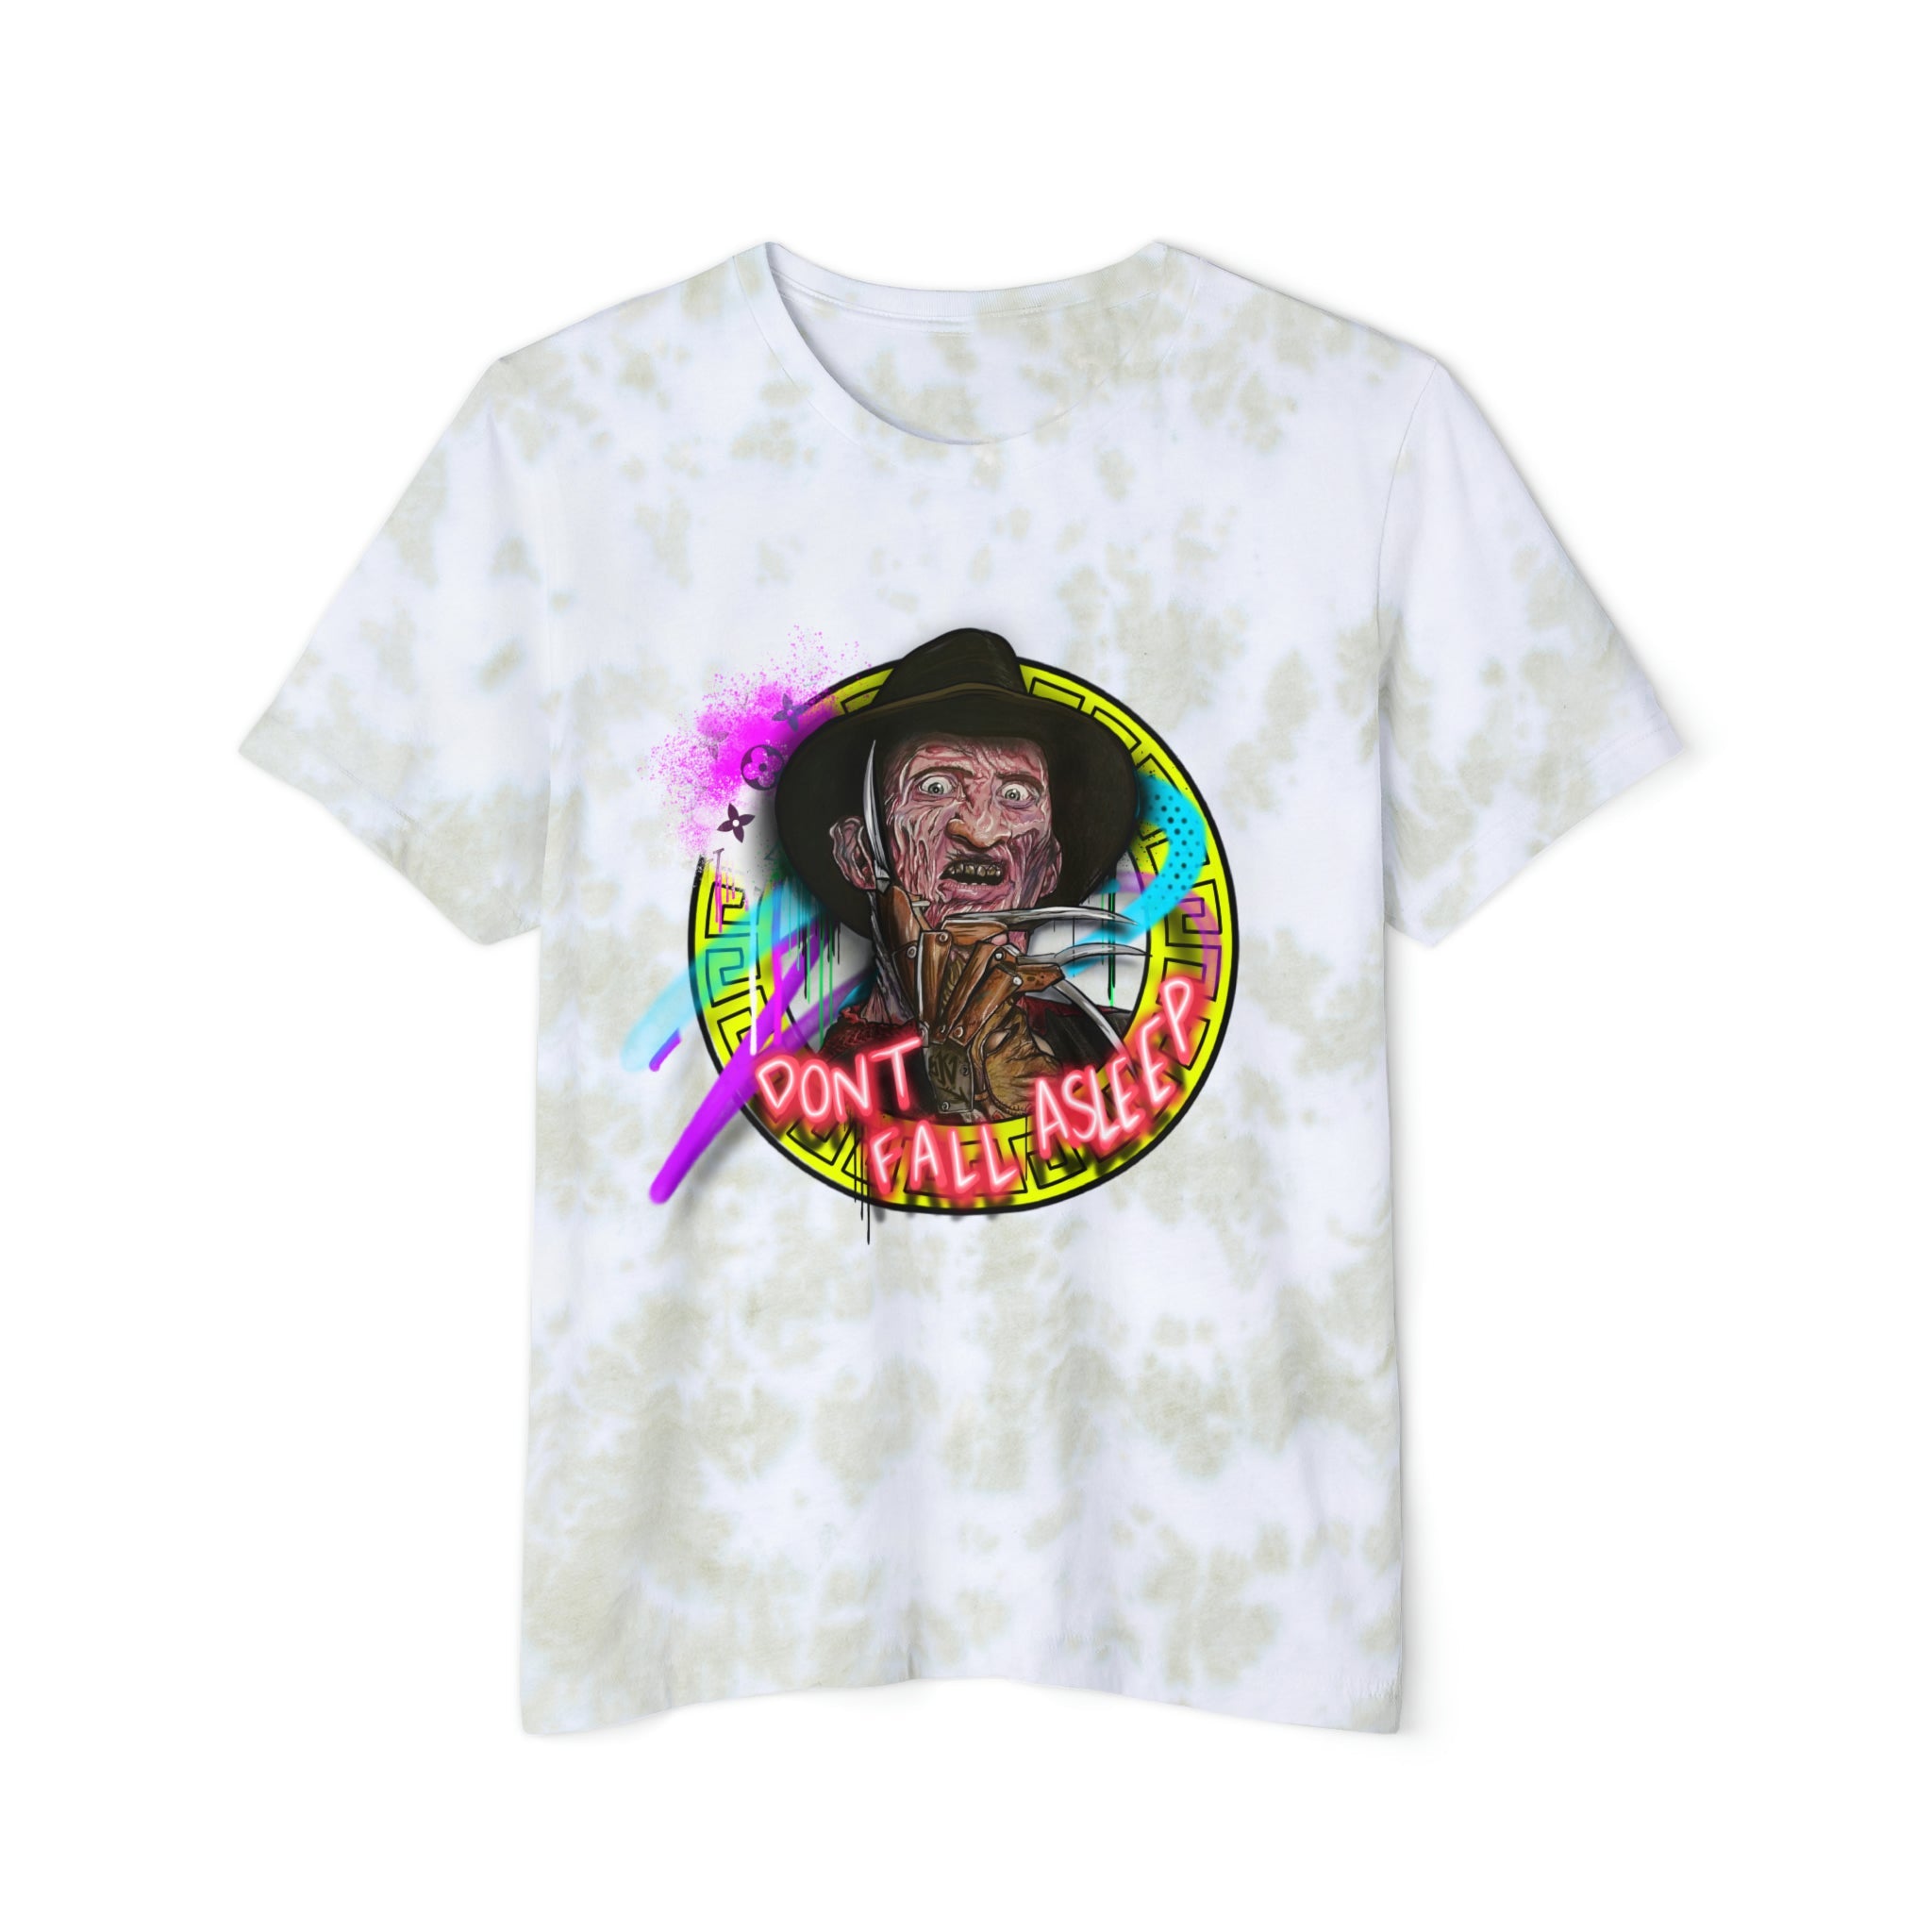 Unisex Freddy x SK Tie-Dyed T-Shirt - Sean Keith Art